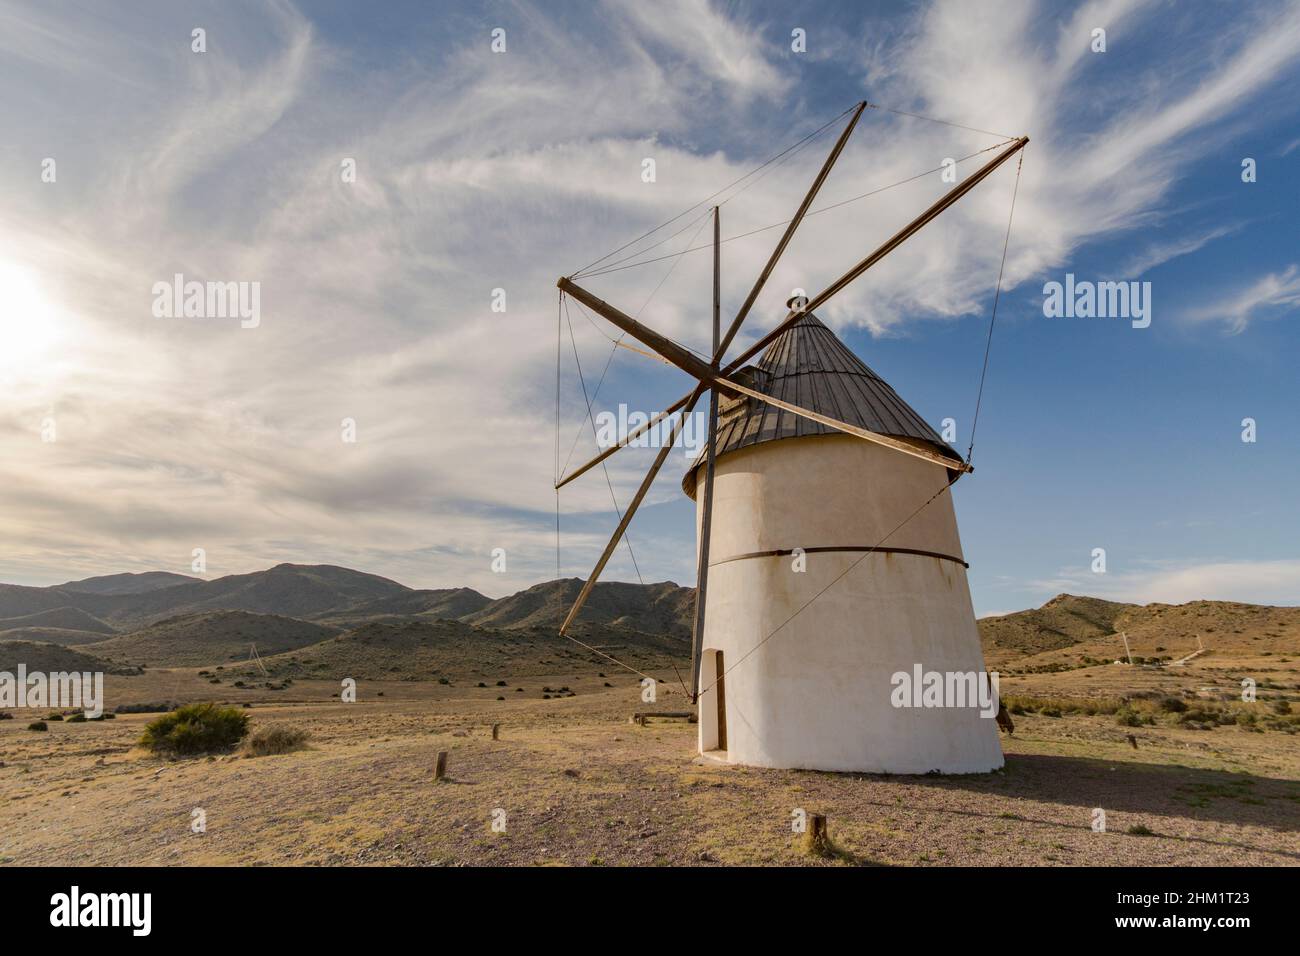 Cabo de gata Spain. Old restored Spanish windmill in El Pozo de los Frailes, Almeria, Andalucia, Spain. Stock Photo